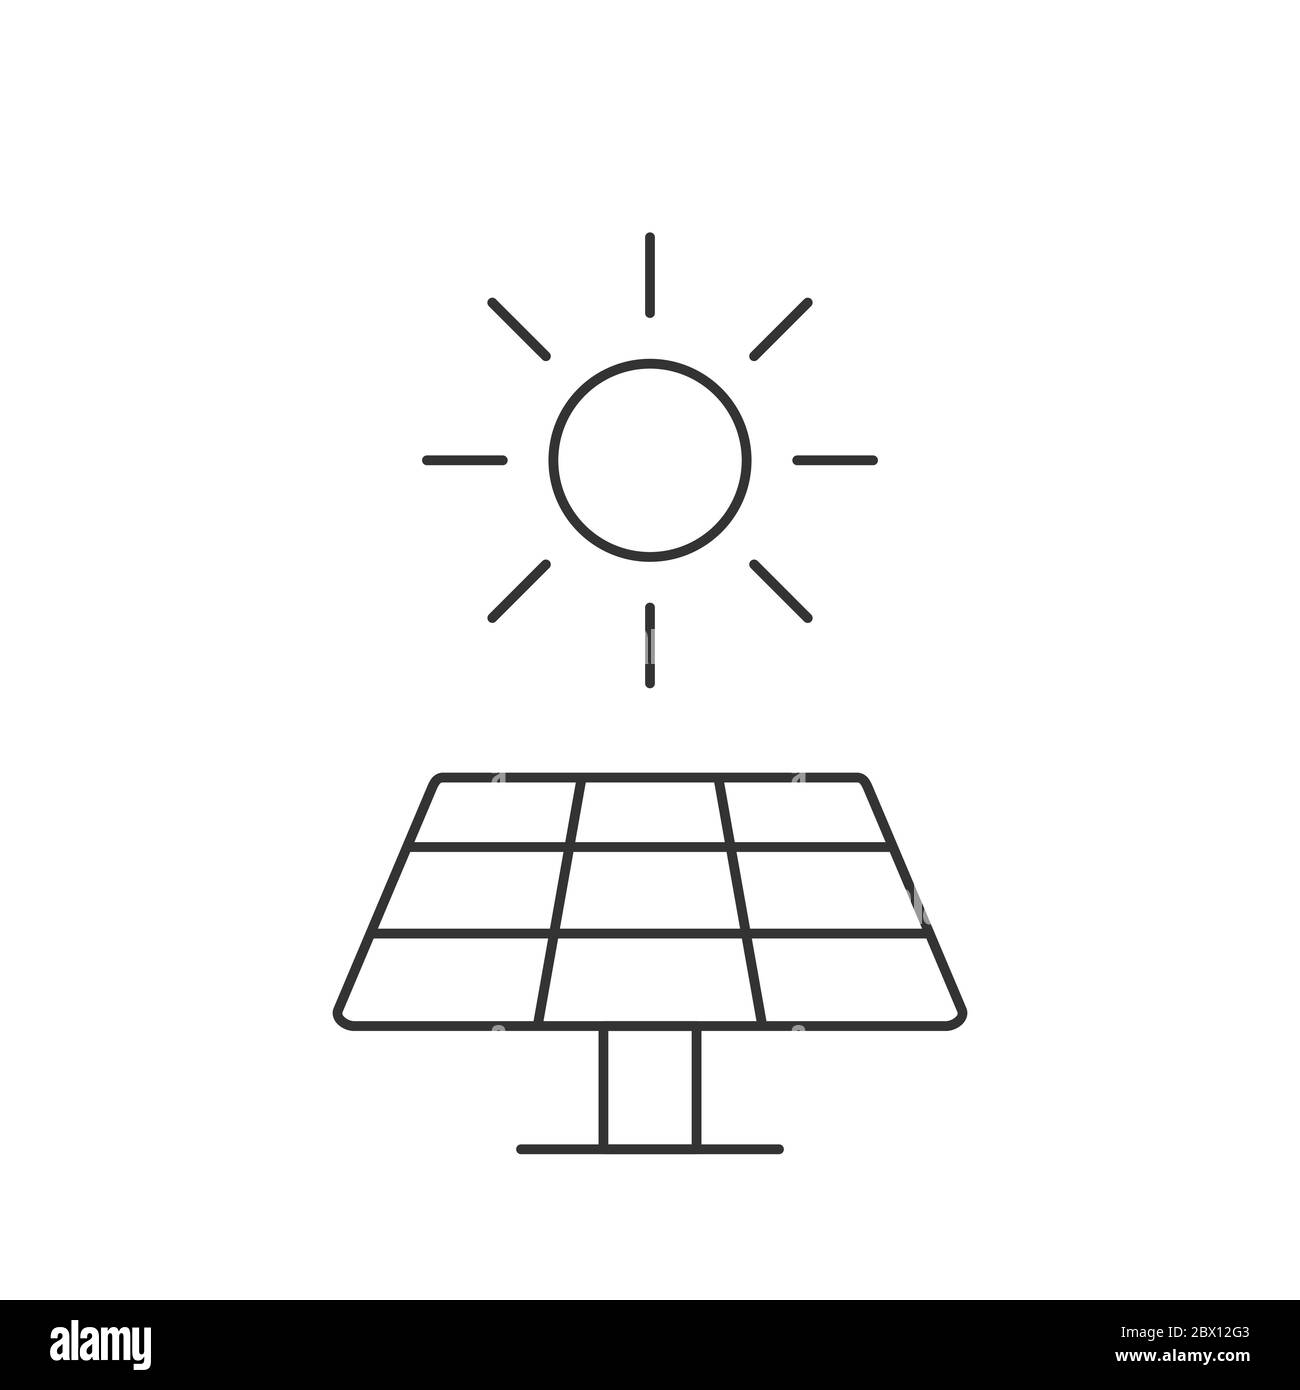 Sonnenkollektoren, dünne Linie, Symbol. Sonne als alternative elektrische Energieressource. Erneuerbare, nachhaltige, umweltfreundliche Energiequelle. Schwarze Umrandung auf Weiß Stock Vektor